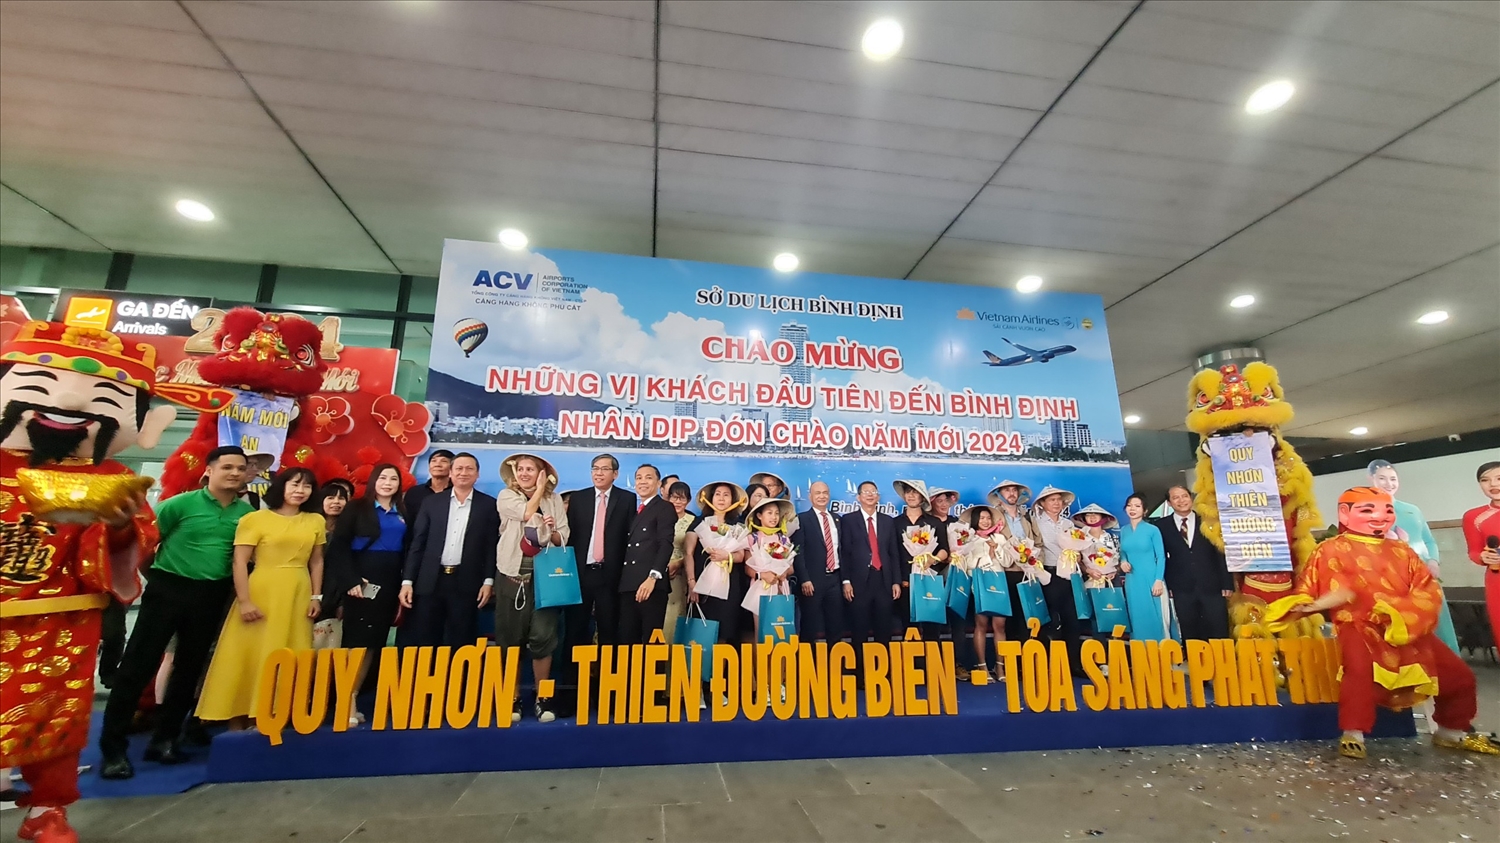 Chào mừng những vị khách đầu tiên đến Bình Định năm 2024